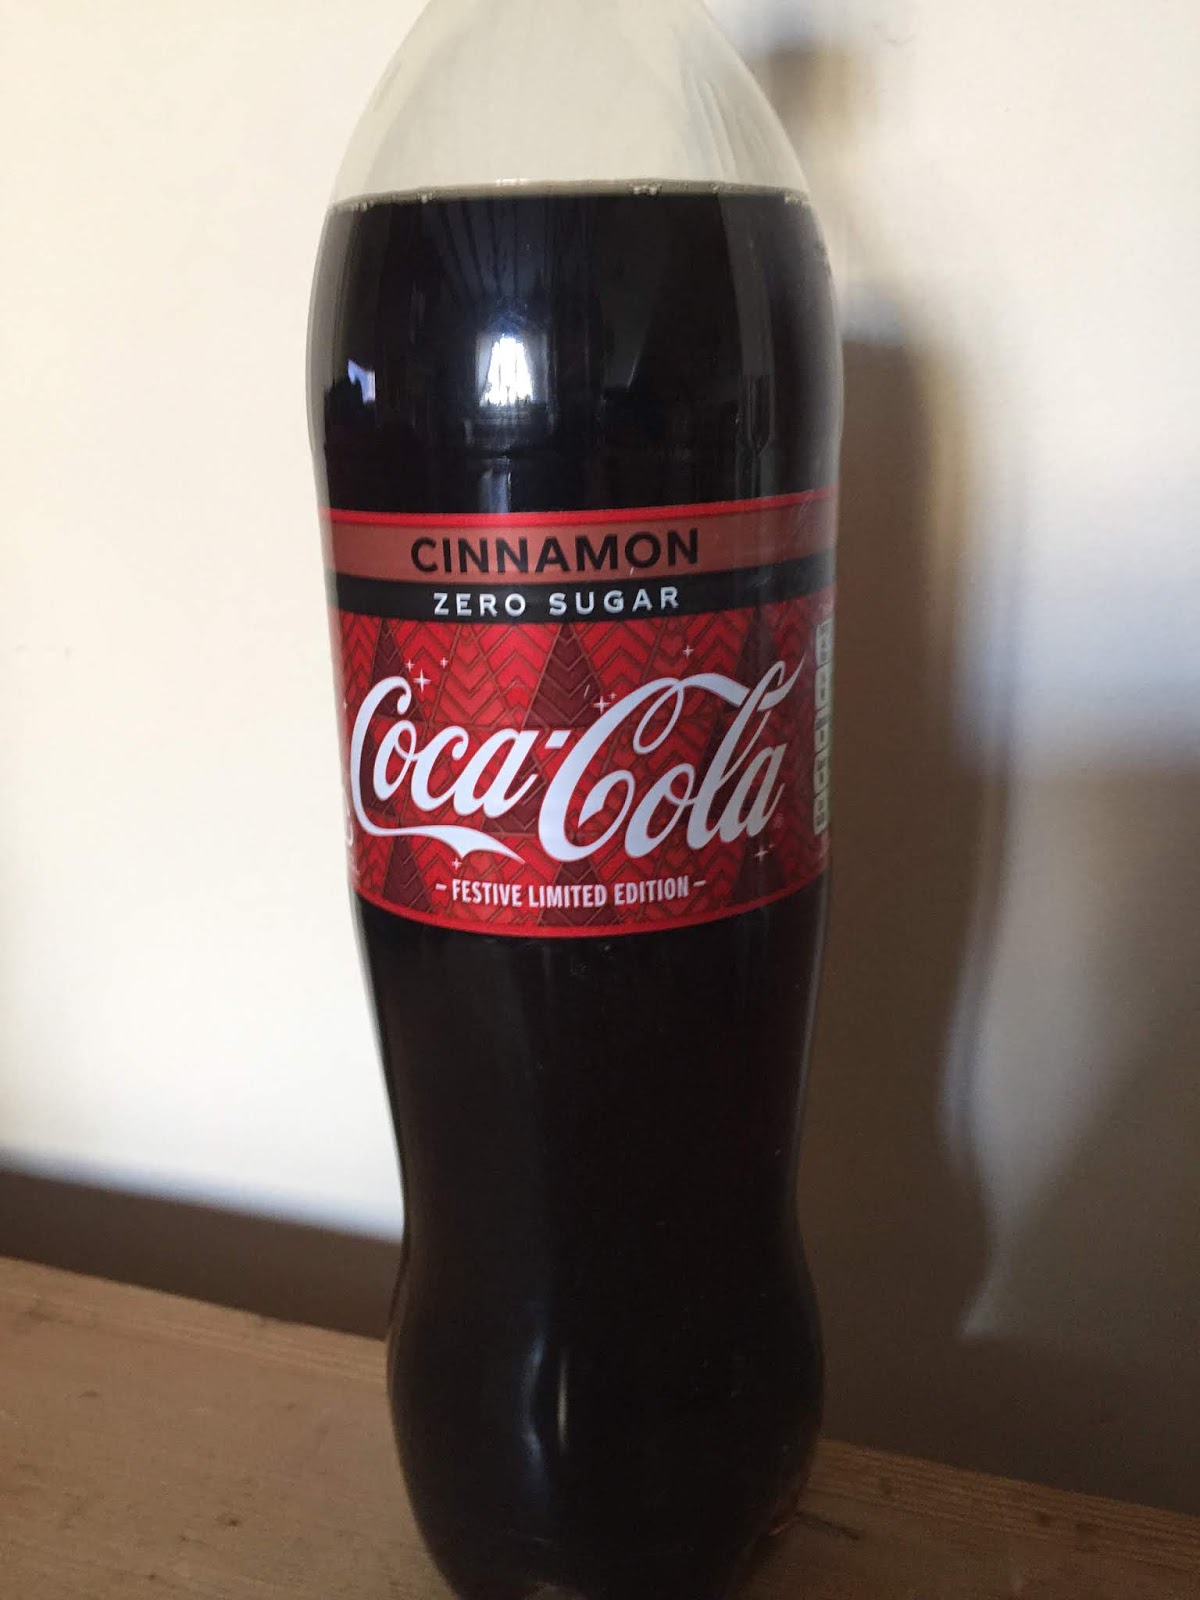 Festive Limited edition 1.25L bottle of Coke Zero CLEMENTINE coca cola 2019 